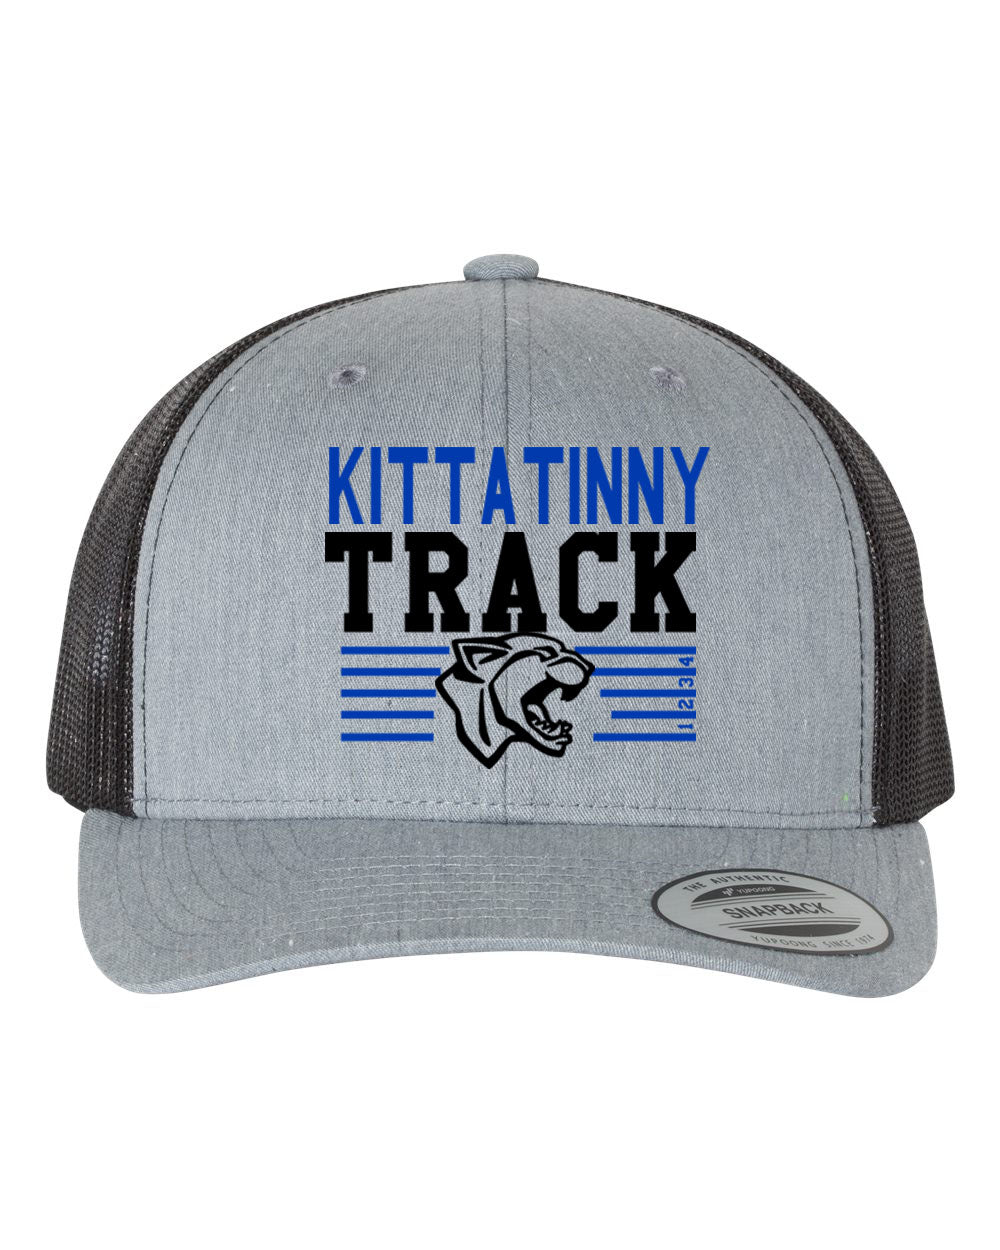 Kittatinny Track Design 5 Trucker Hat